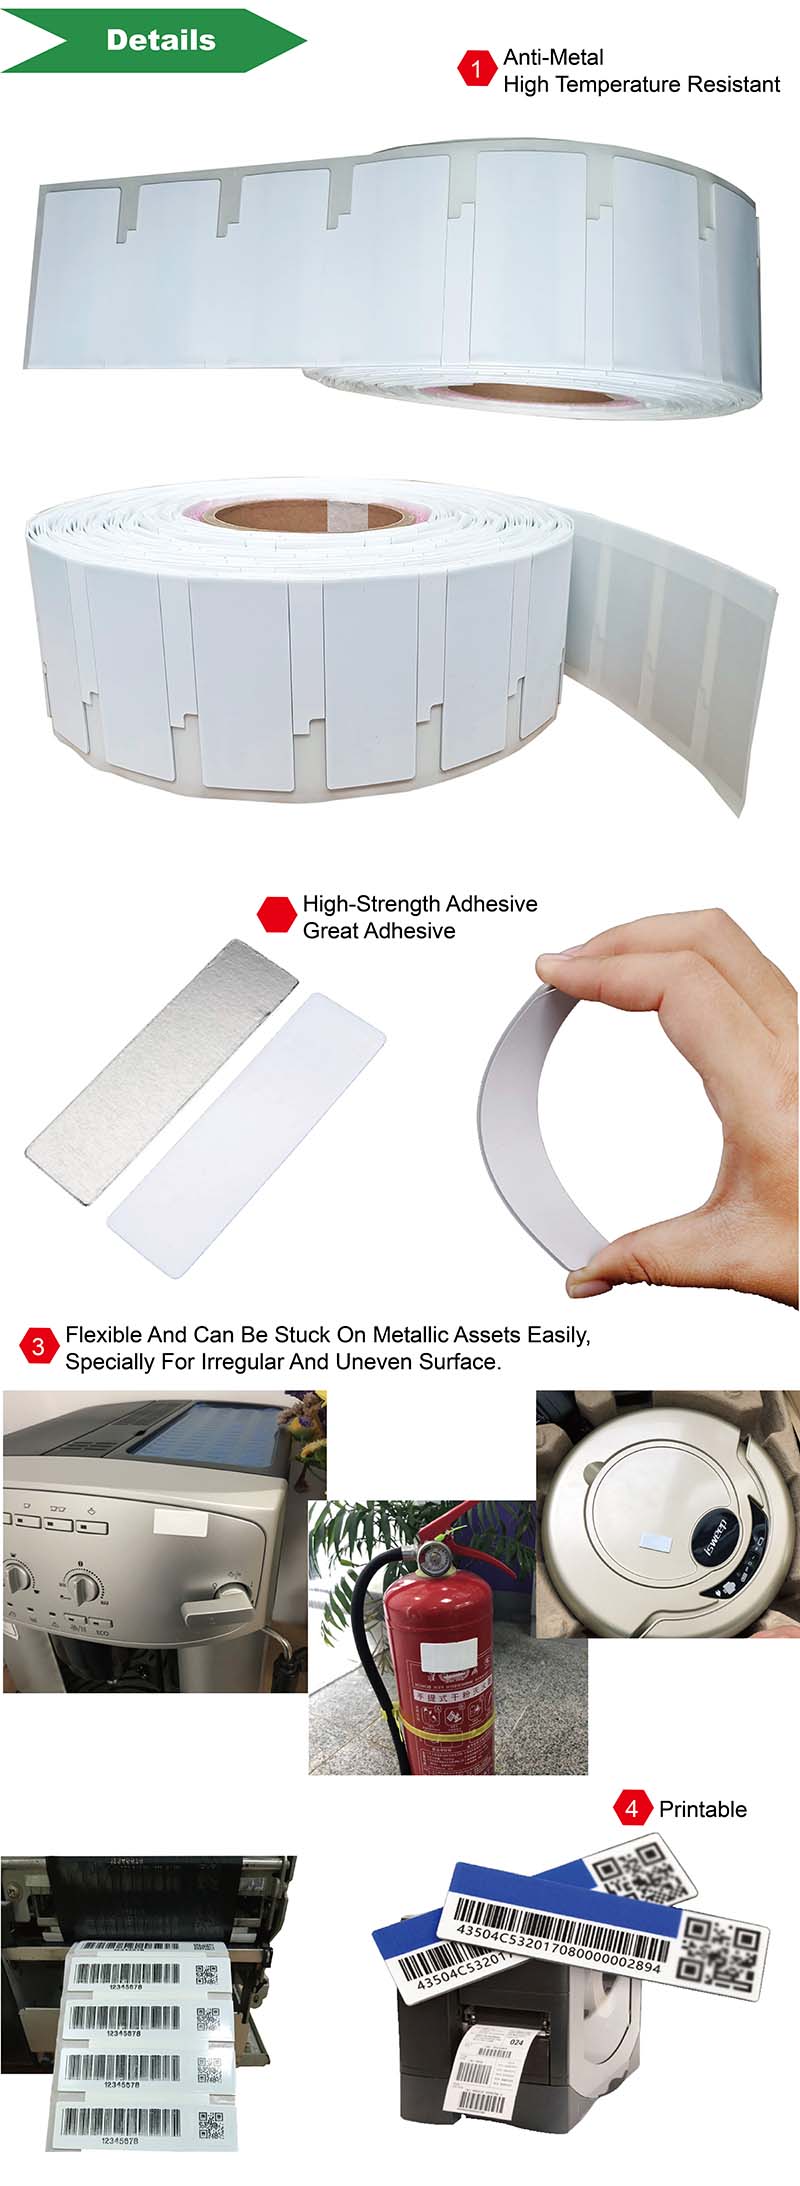 Etiquetas antimetal RFID imprimibles para seguimiento